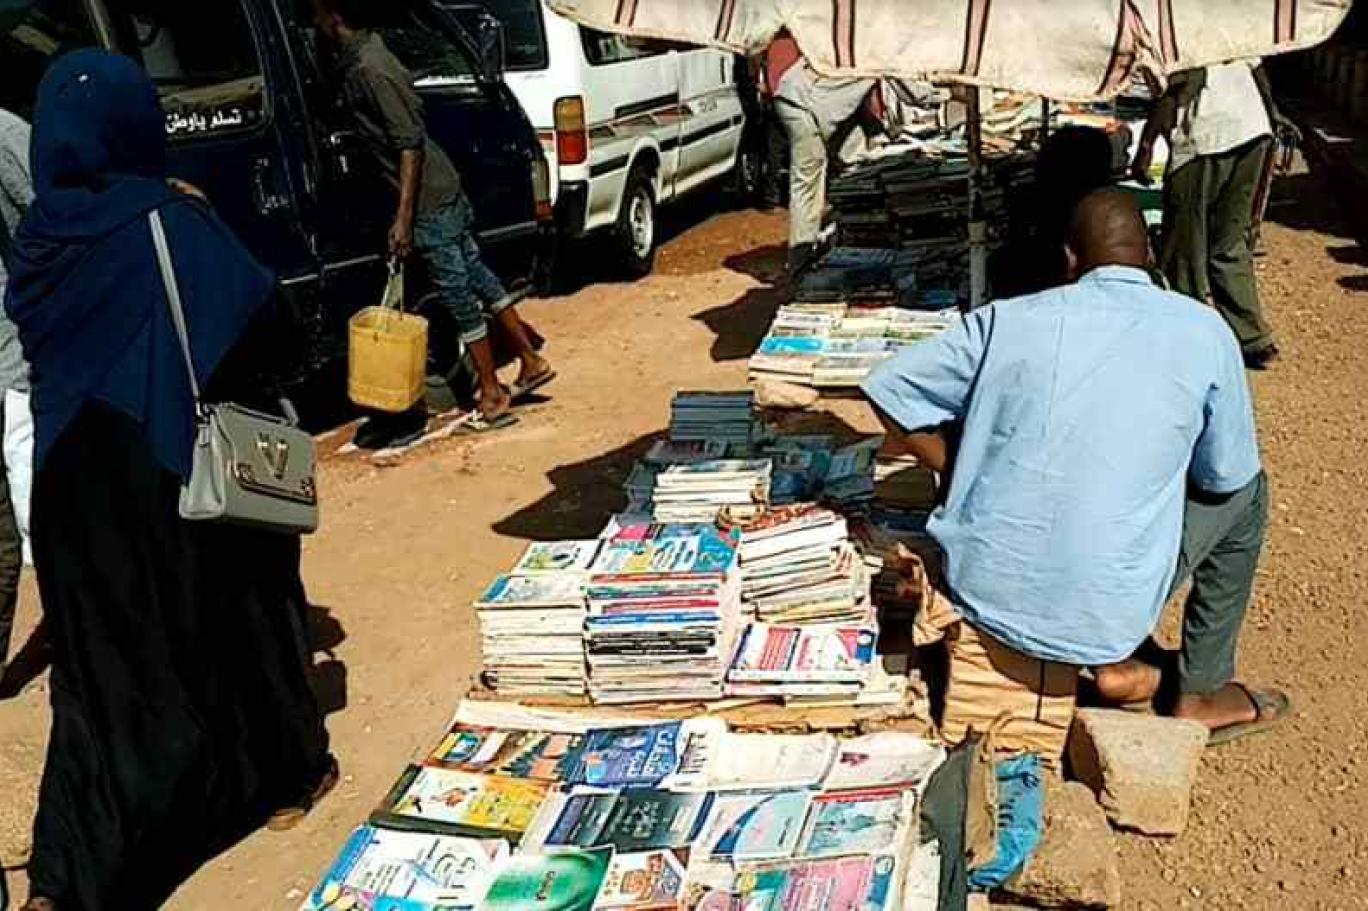 كتب الرصيف في السودان "تتسول" القراء ... بسطات الشارع ازدهرت قديماً لكن الأوضاع الاقتصادية حالياً جعلتها بلا رواد